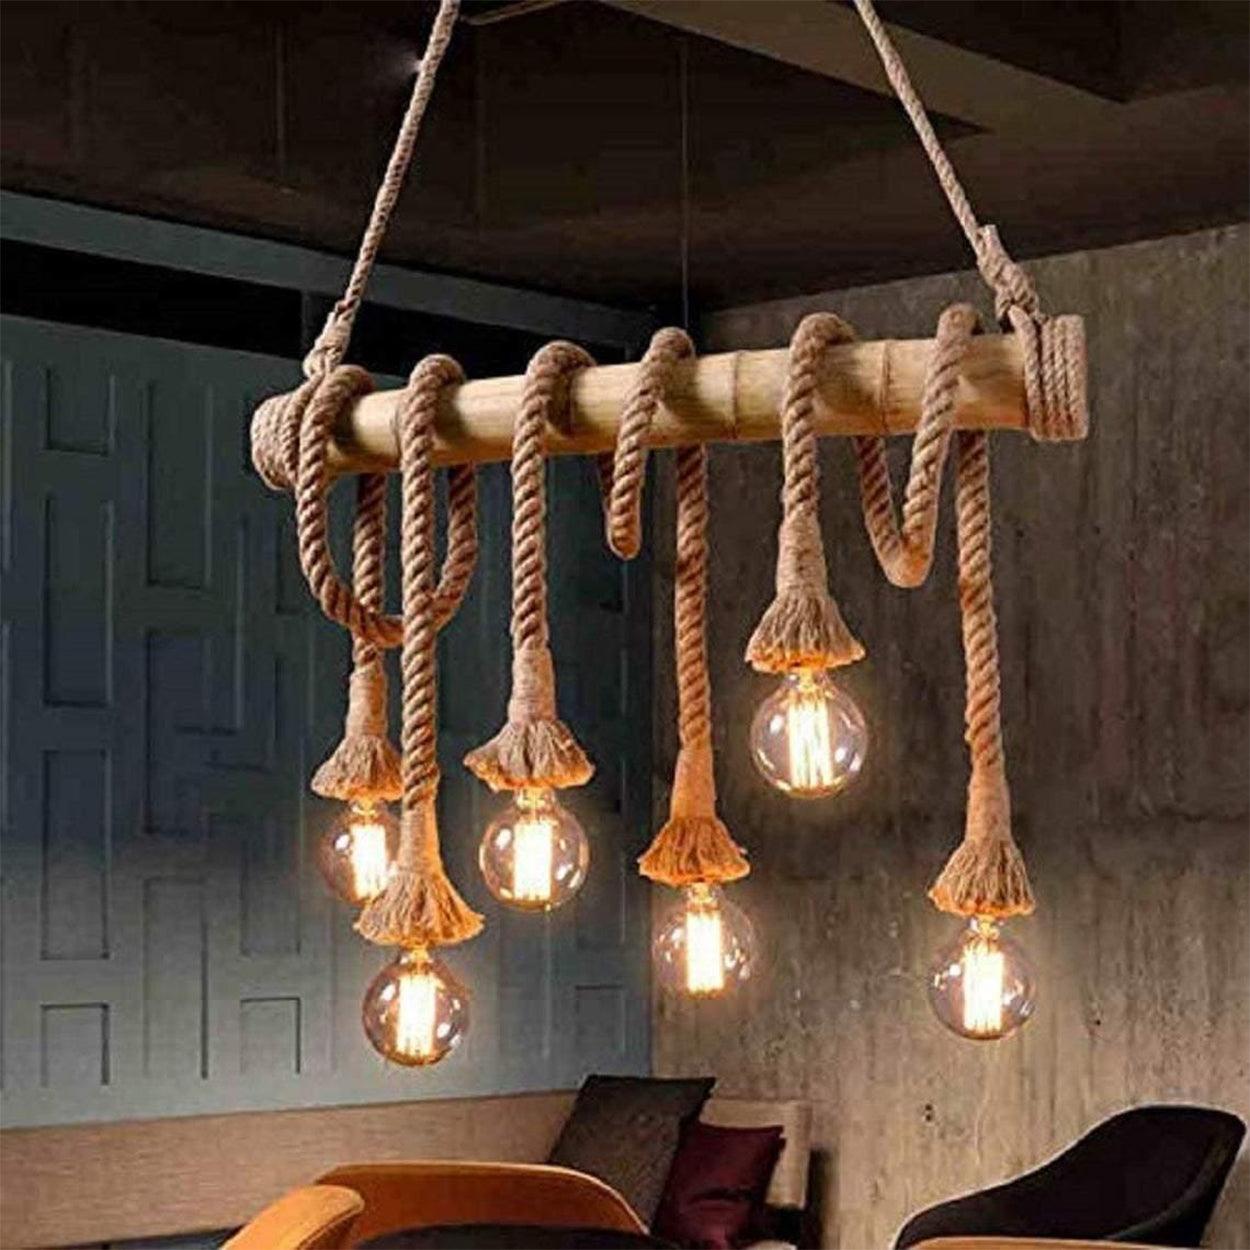 http://www.ankurlighting.com/cdn/shop/products/ankur-bamboo-6-hemp-rope-light-chandelier-ankur-lighting-1.jpg?v=1695131382